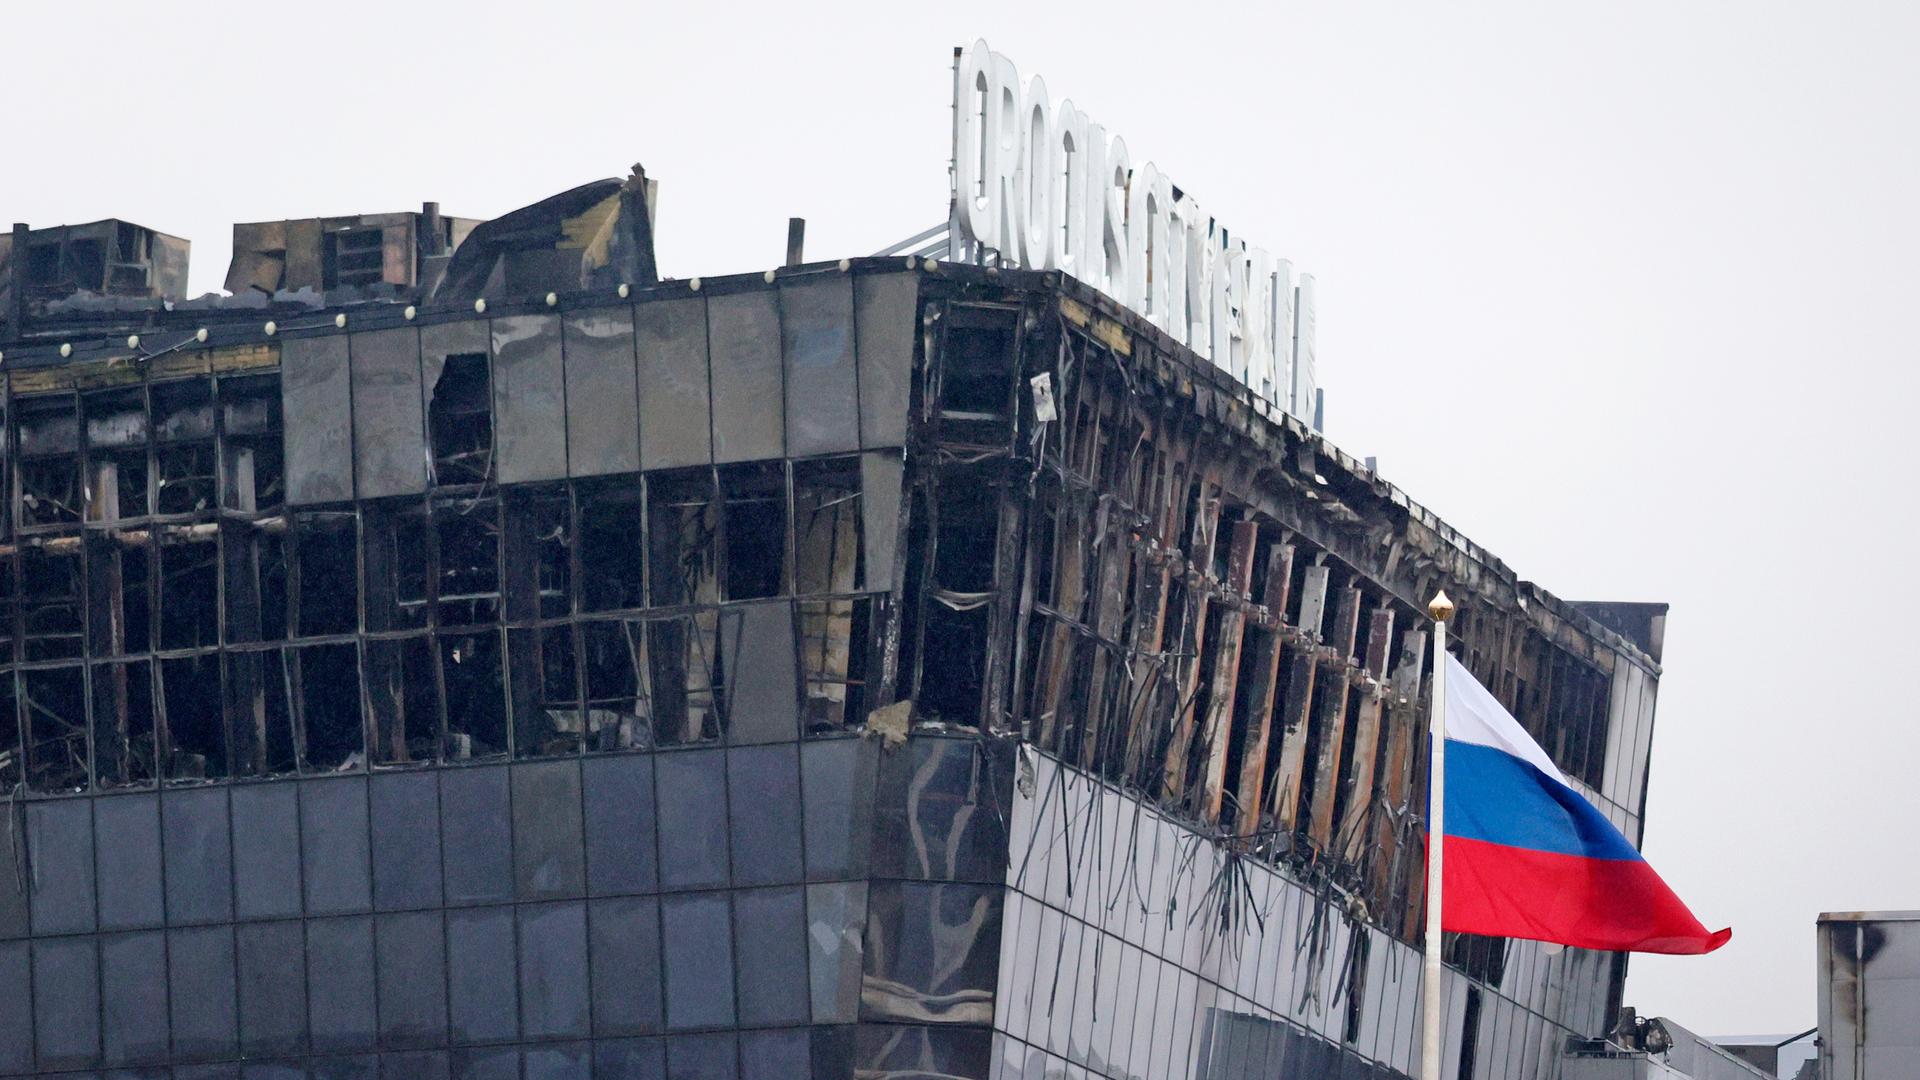 Blick auf das zerstörte Gebäude in Moskau. Die Glasfassade ist durch den Brand schwer beschädigt. Im Vordergrund weht eine russische Fahne.